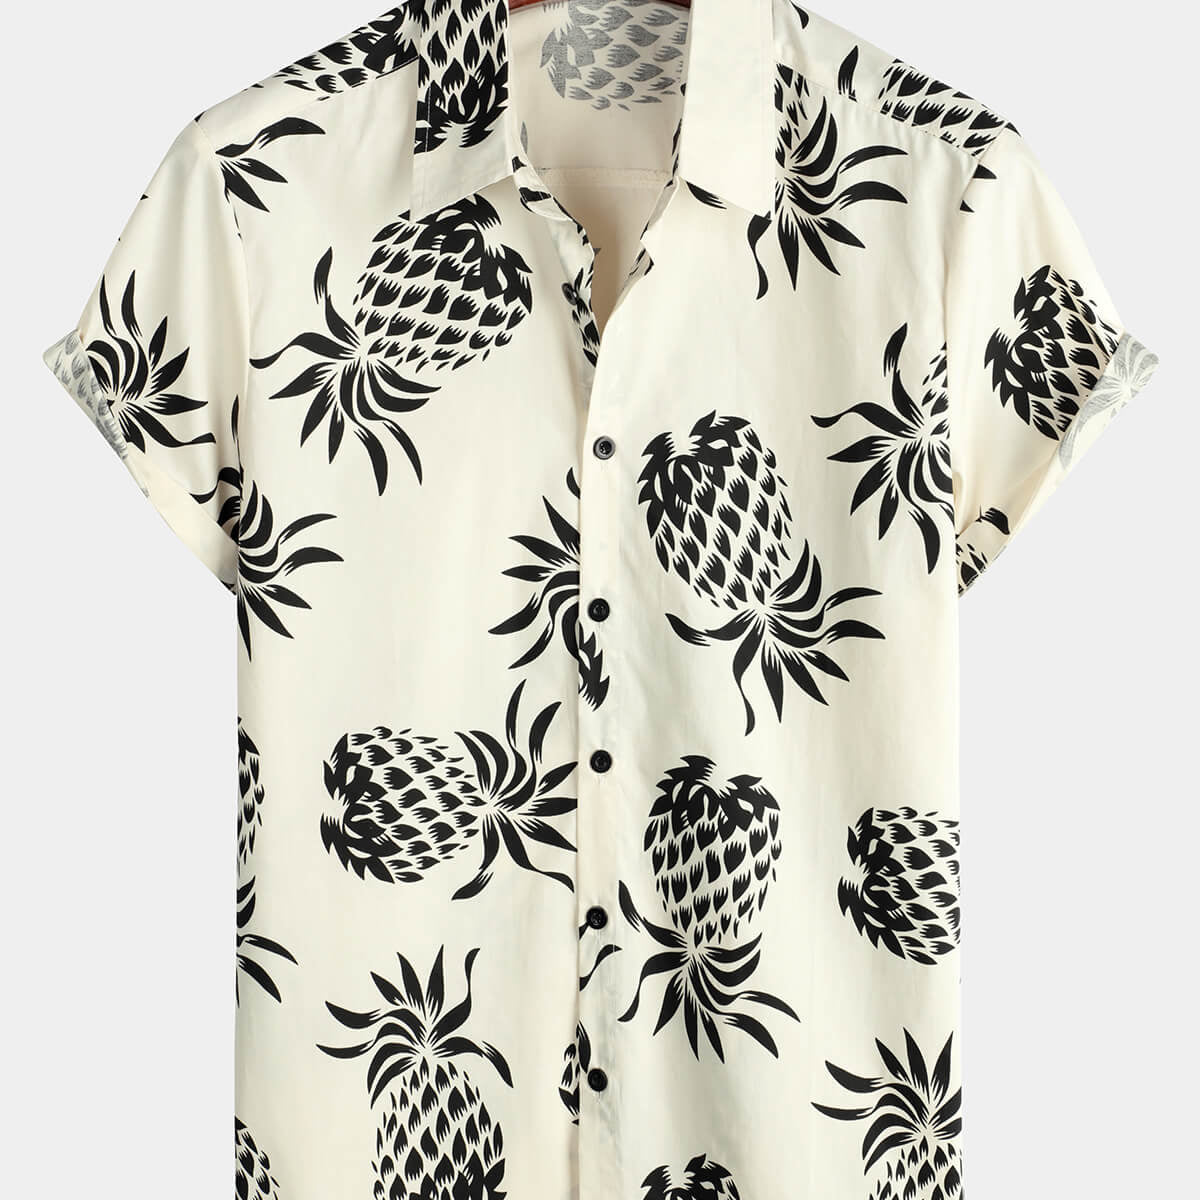 Camisa de manga corta con botones color beige de playa hawaiana de verano con estampado de piña de algodón para hombre